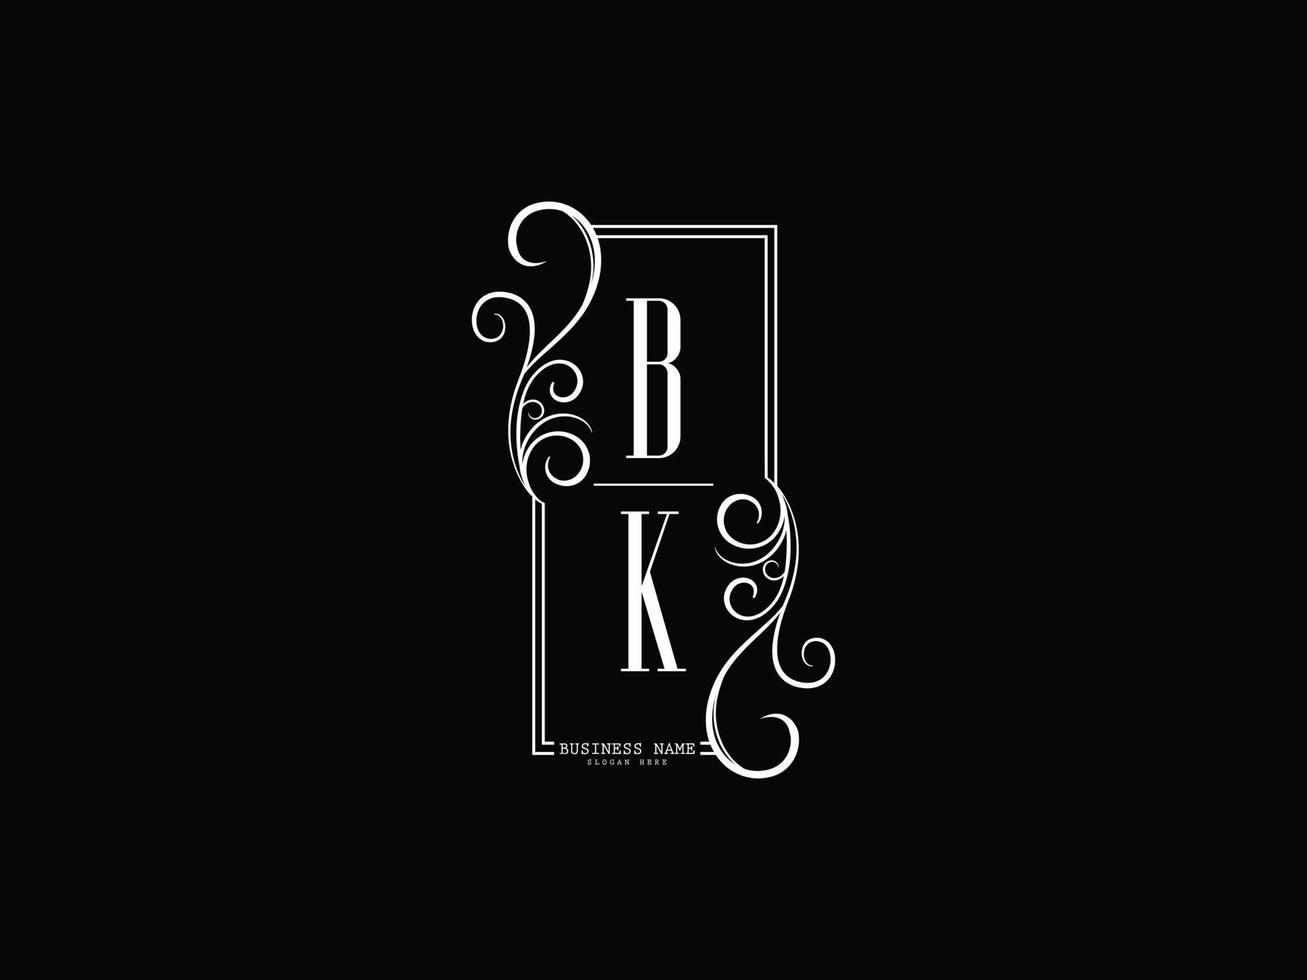 Initials BK Logo Image, Luxury Bk kb Letter Logo Design vector